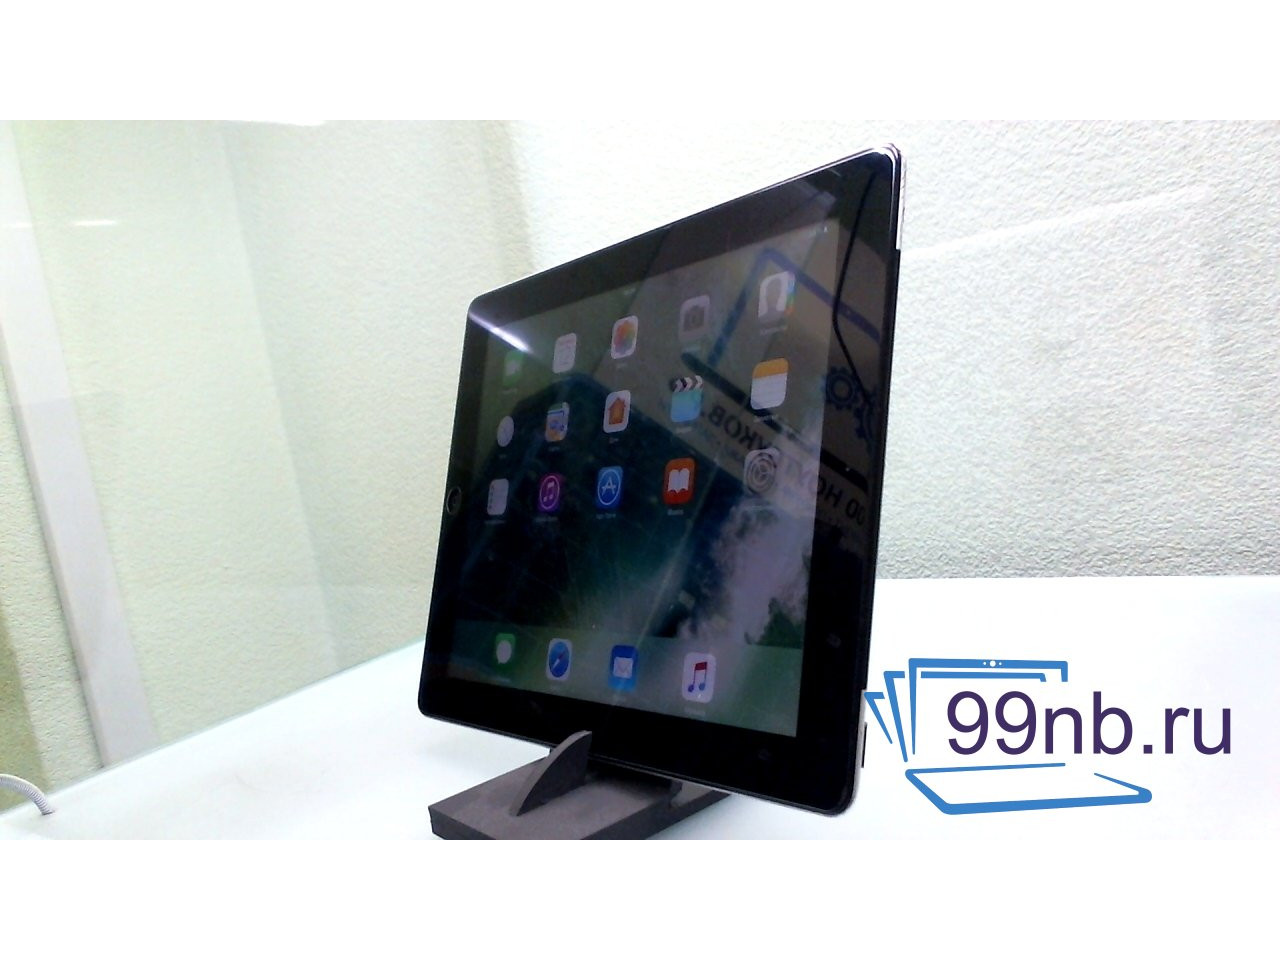 Macbook iPad 4 Wi-Fi Cellular